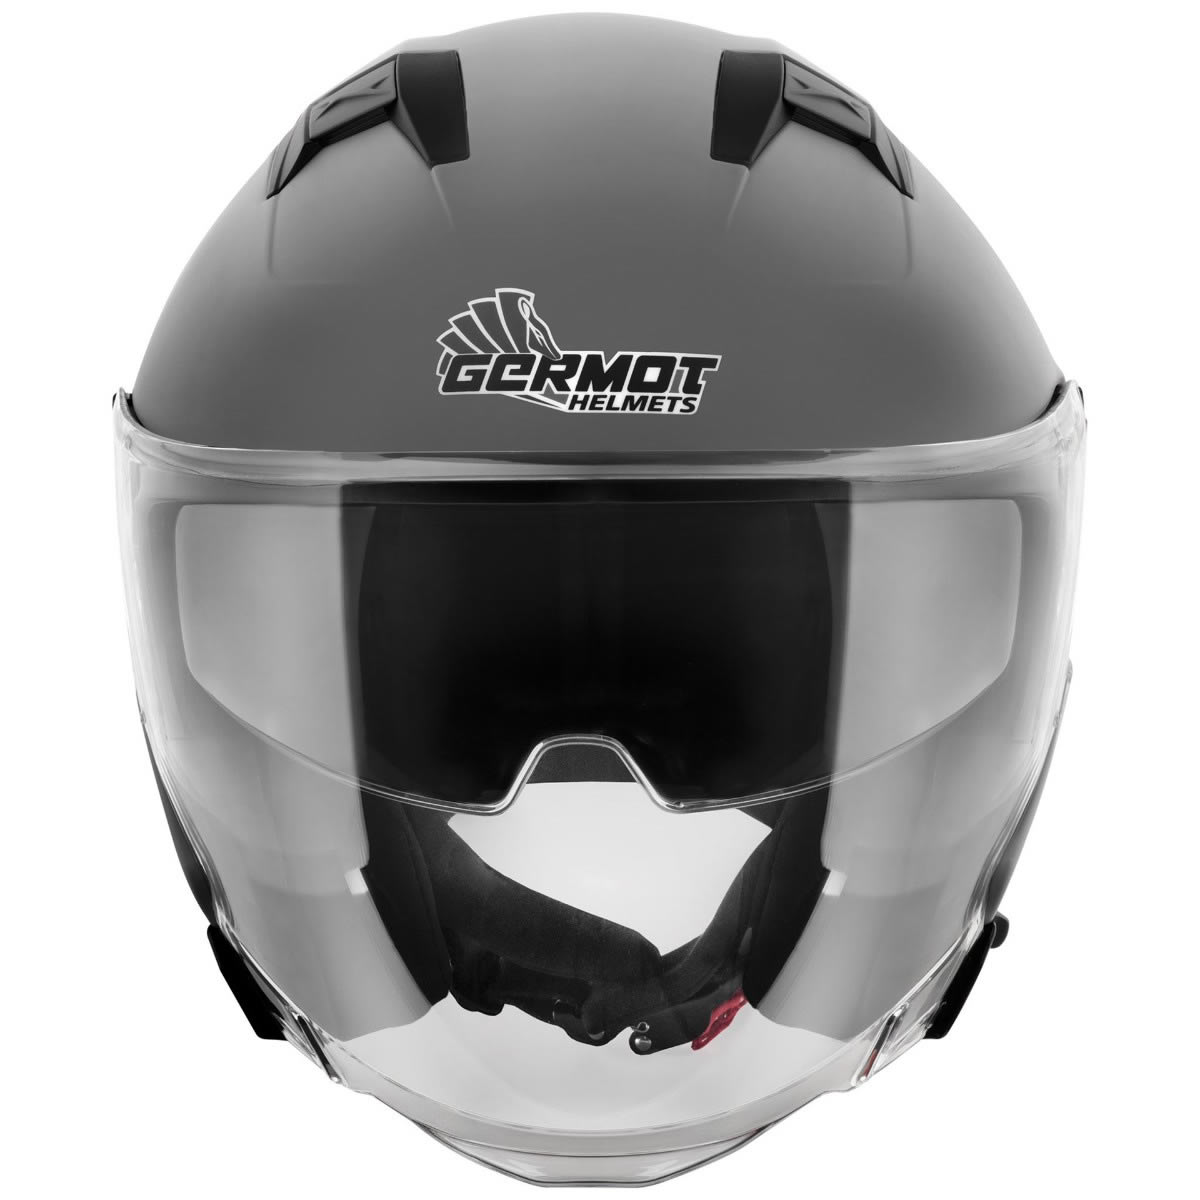 Germot GM 670 Helm, grau matt